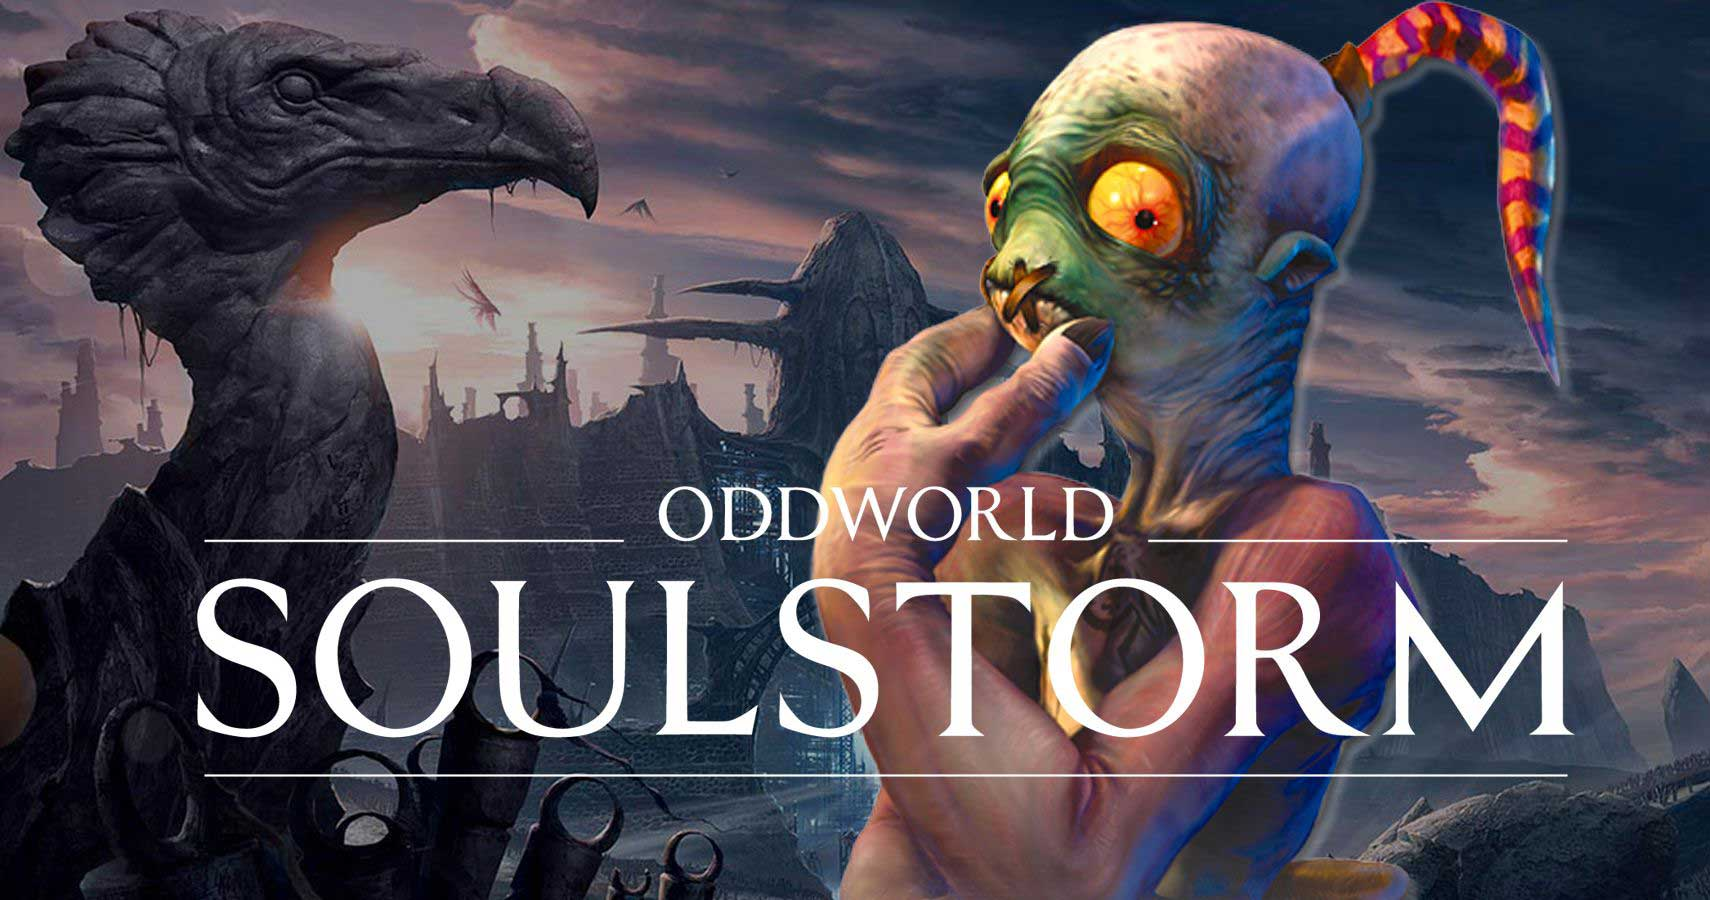 Oddworld soulstorm: системные требования, особенности переноса между ps4/ps5, новые ролики и скриншоты